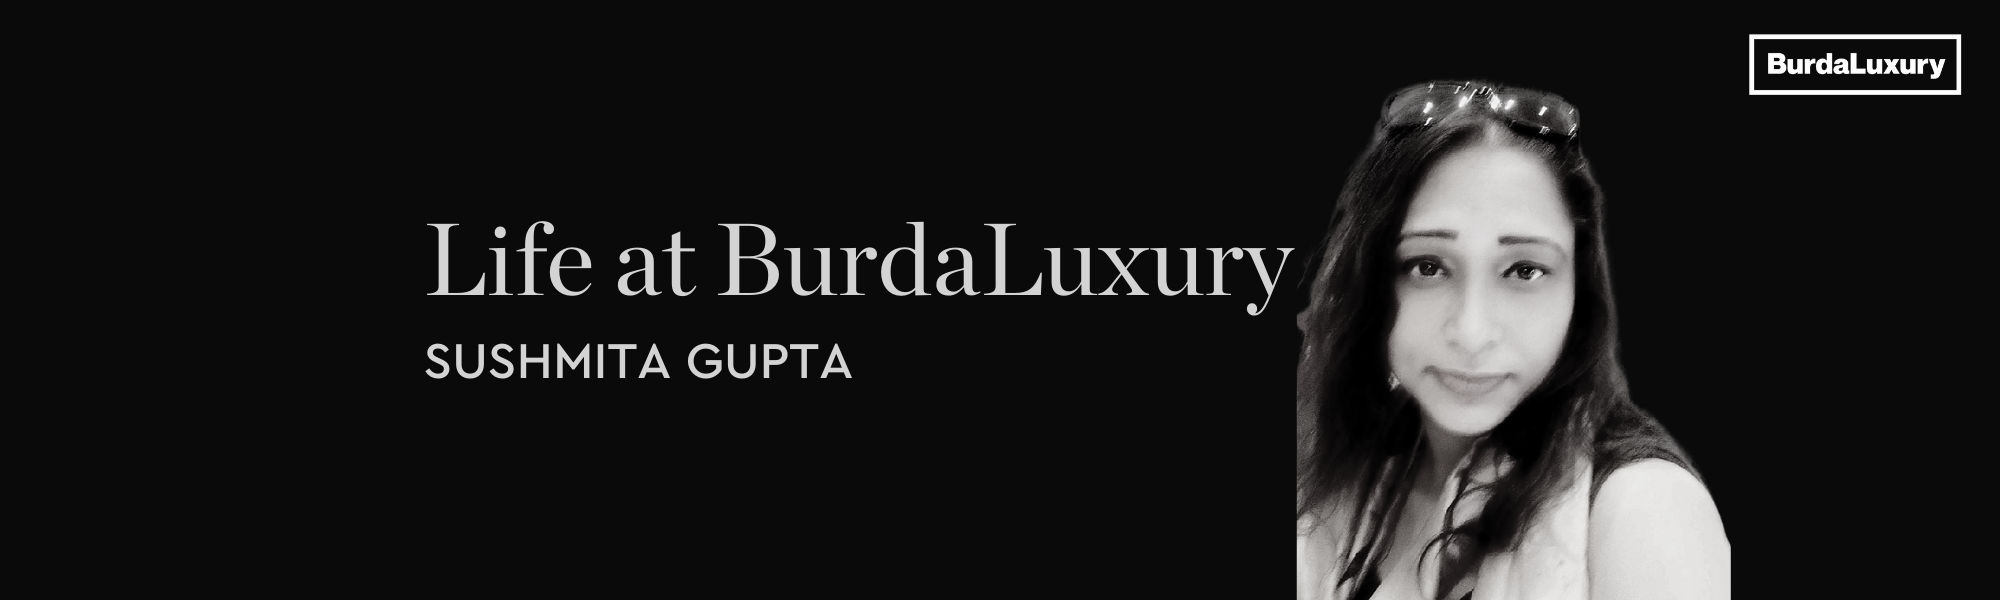 Life at BurdaLuxury Banner - Sushmita Gupta